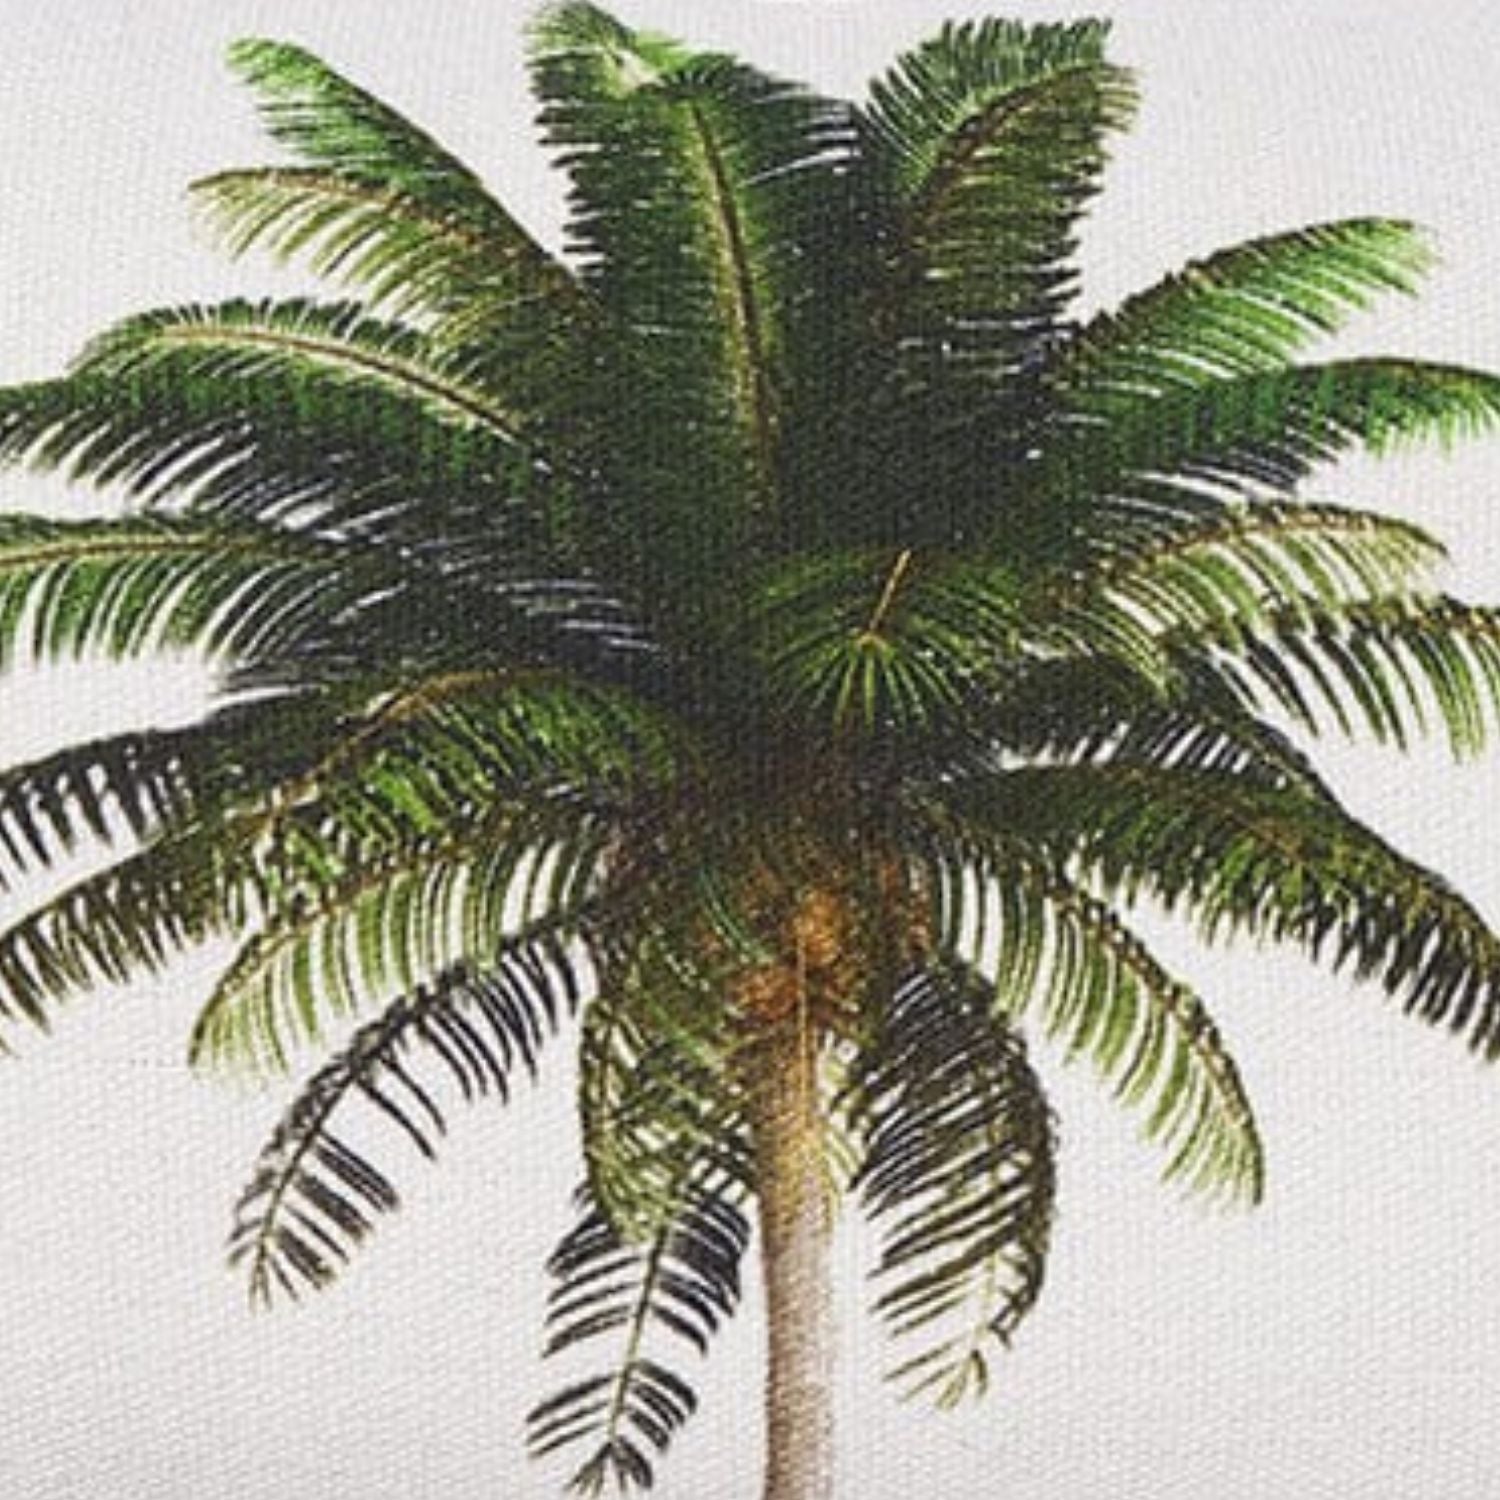 White, black and green cushion 30x50 Palm tropical lumbar design